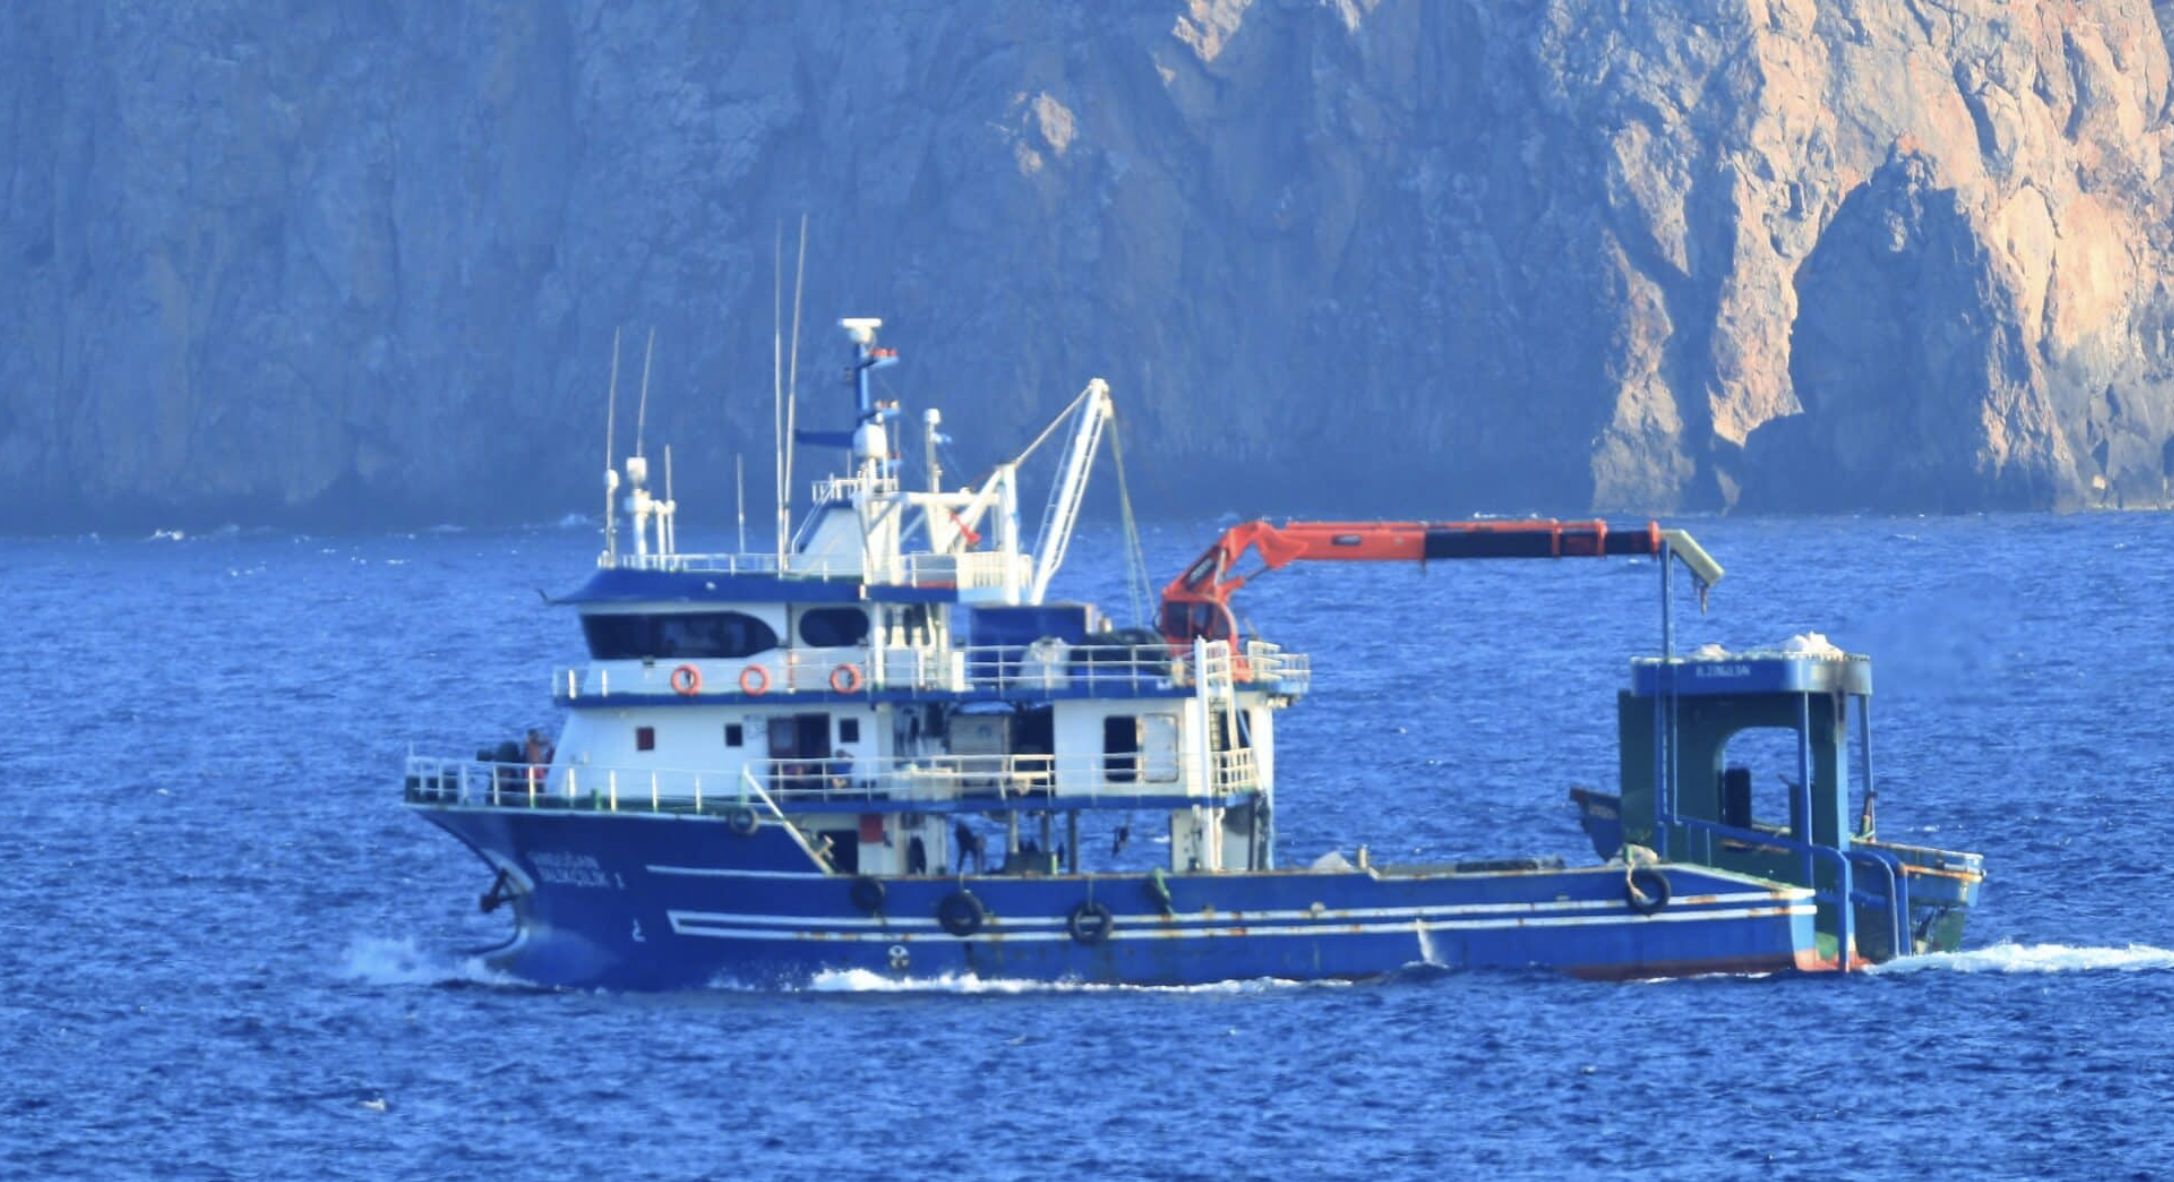 Οι Τούρκοι ισχυρίζονται ότι έγινε επεισόδιο στο Αιγαίο μεταξύ του Λιμενικού και τουρκικού αλιευτικού